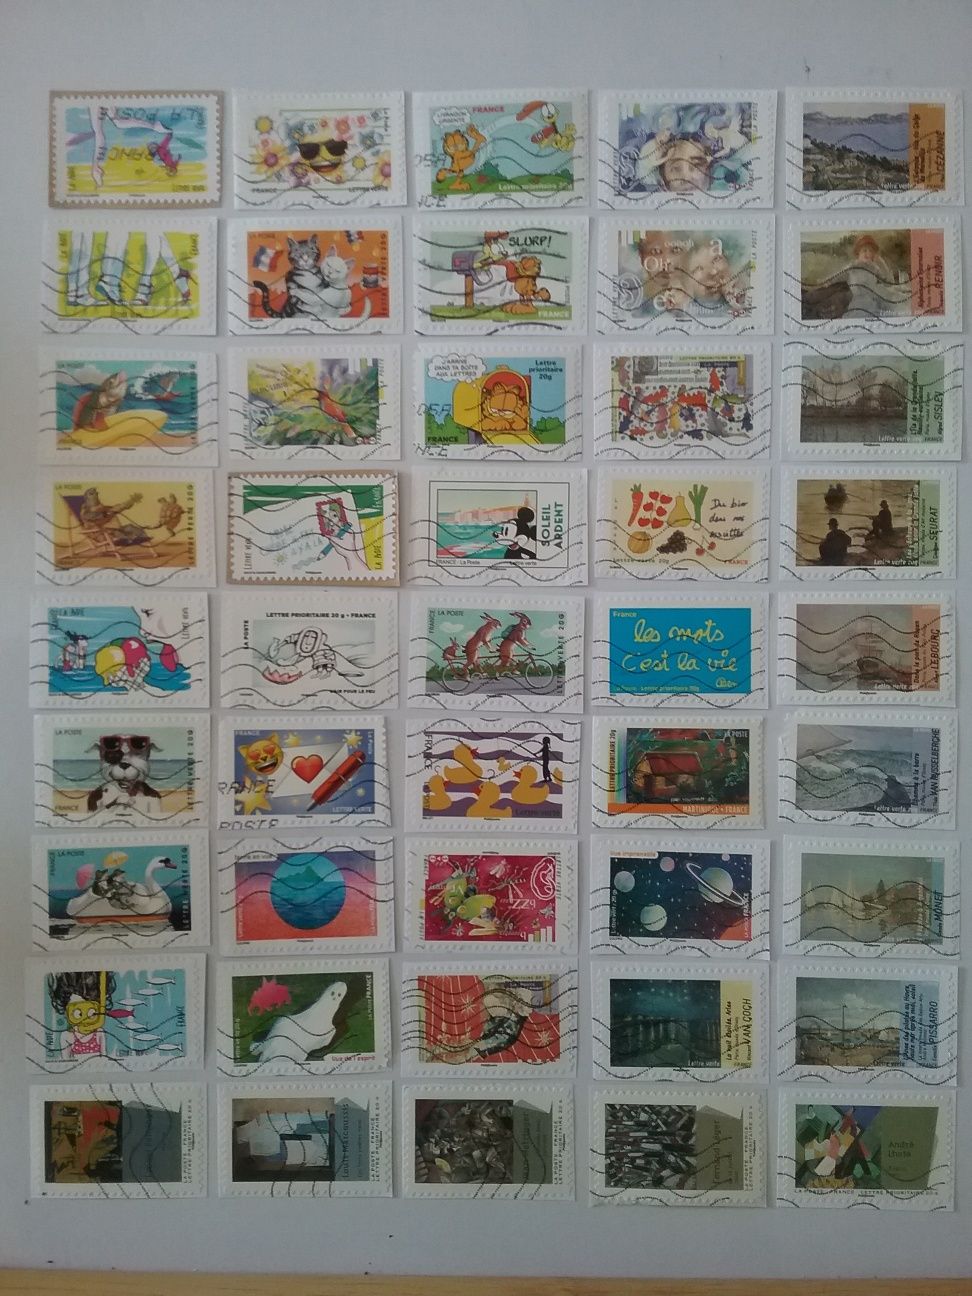 Conj. de selos usados de França, 3,00€ cada conj.